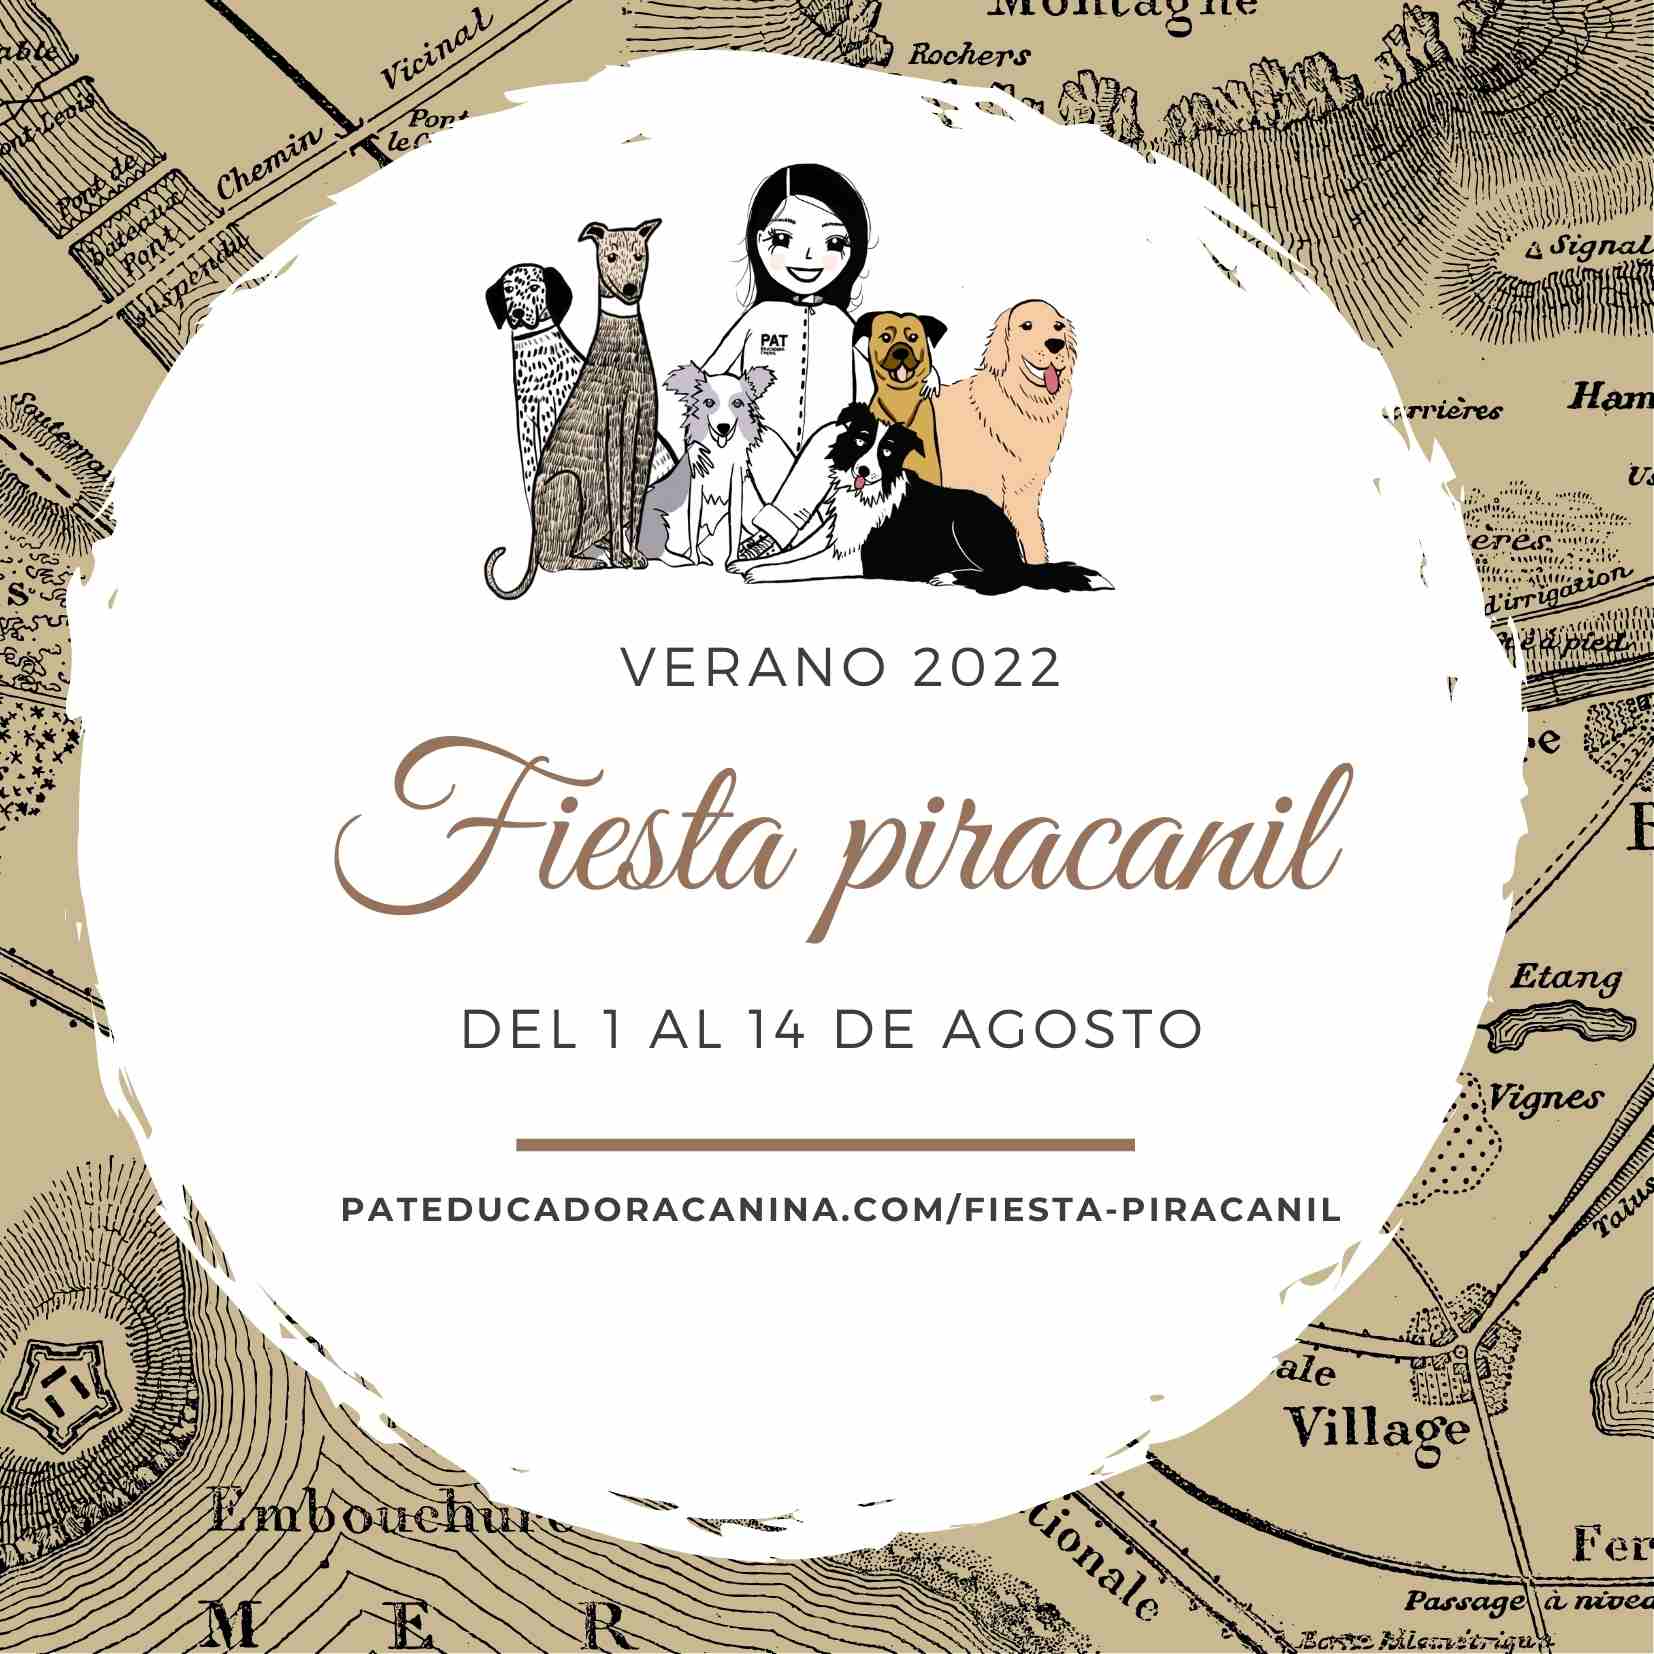 PAT Educadora Canina - Semana Piracanil - Pack Abel